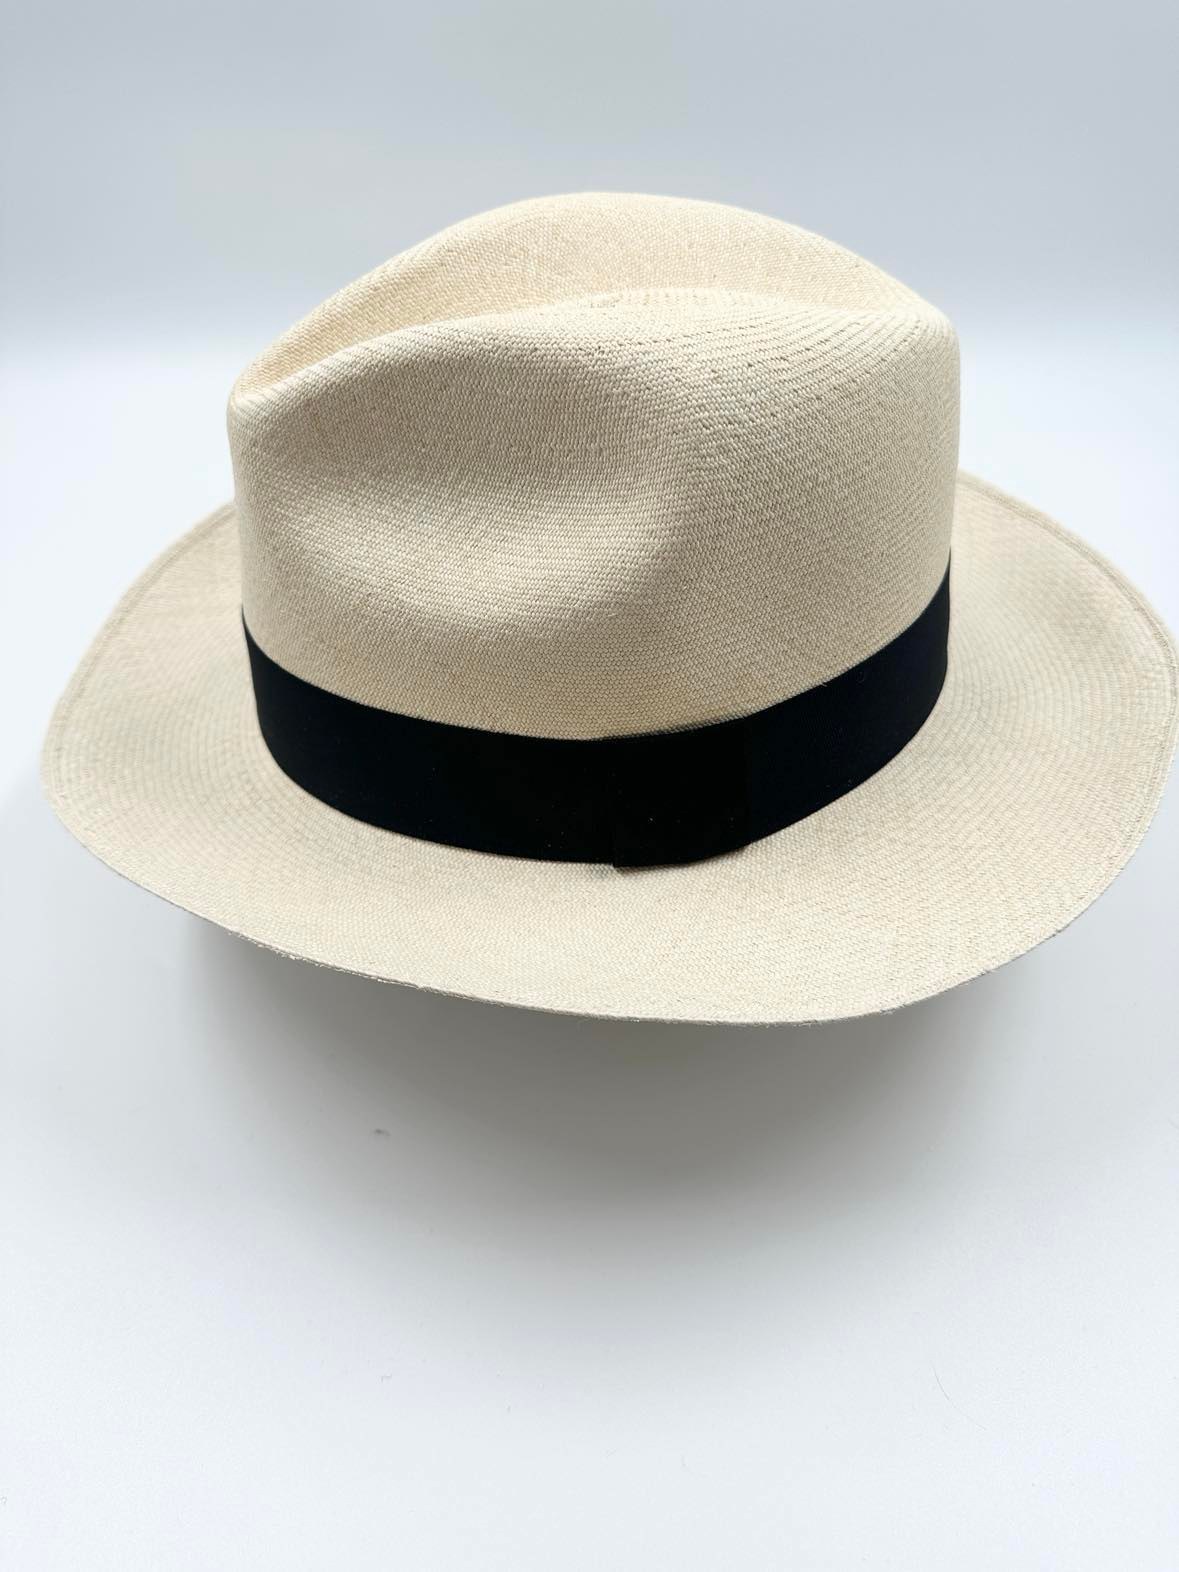 Ægte Montecristi Fedora Panama Hat med en kvalitet på 19-20 fletninger pr. inch - kvaliteten er høj og hatten er unik